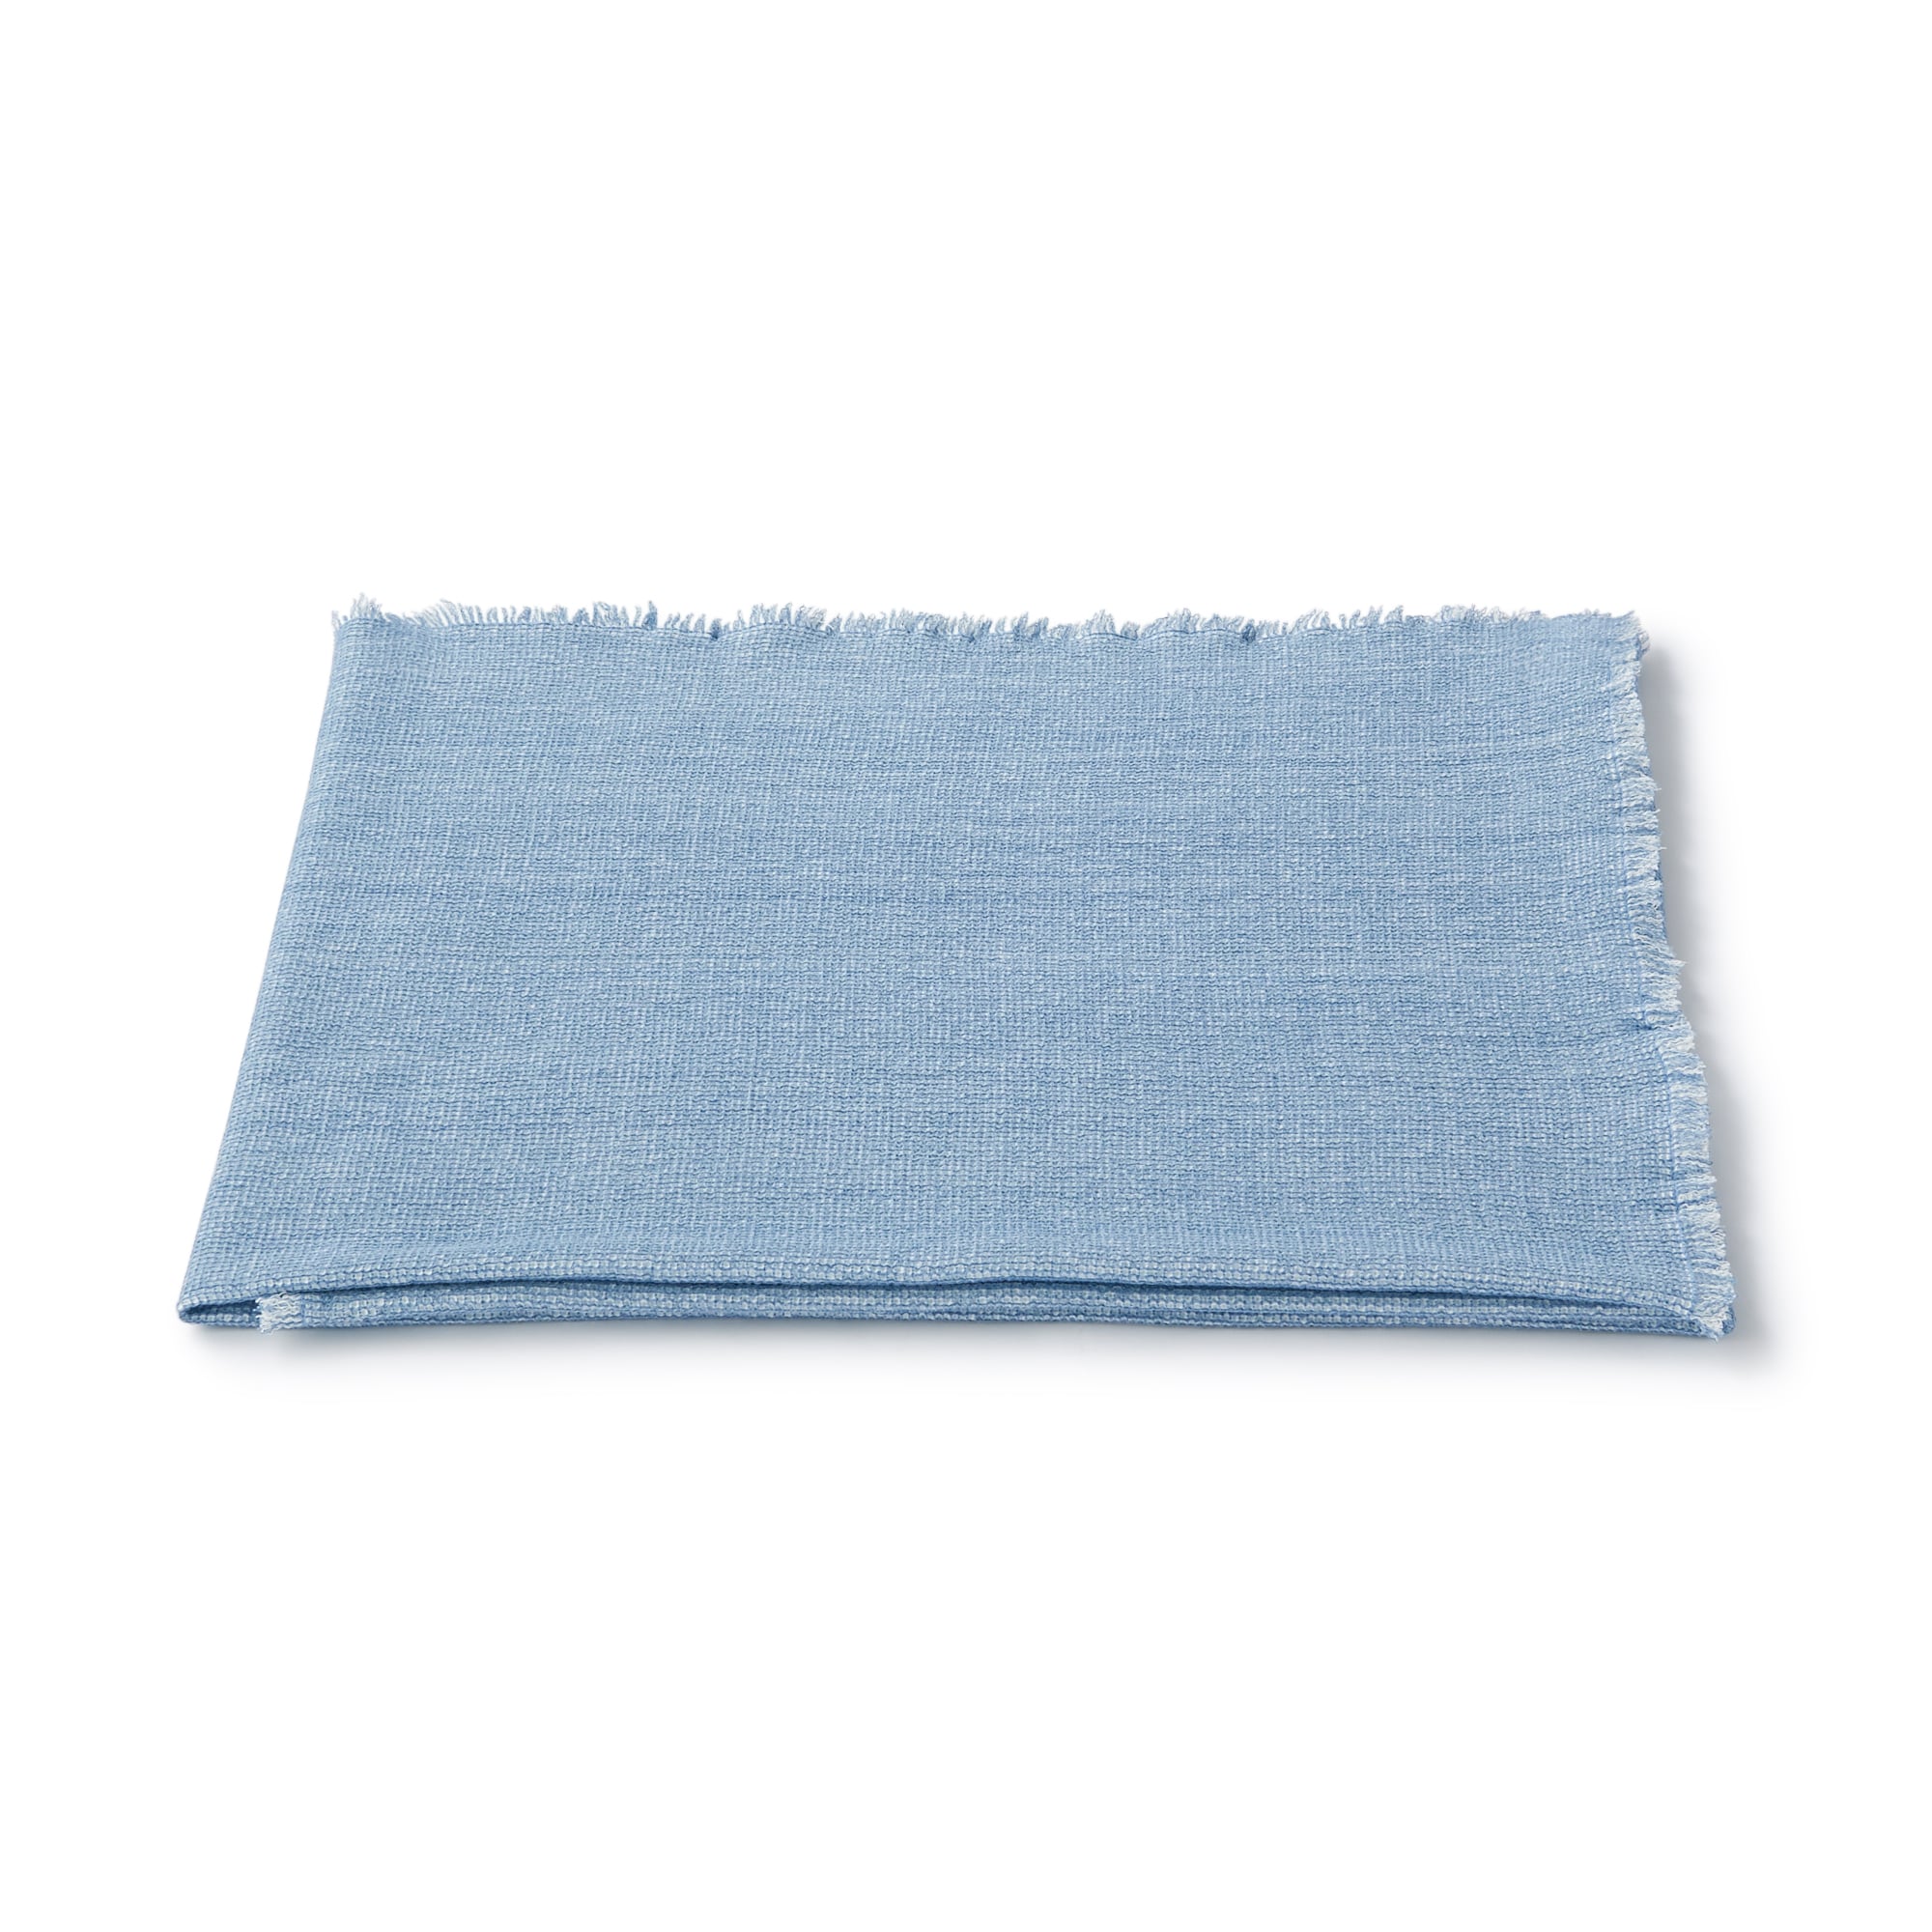 무인양품 일본 거실 담요 블랭킷 숄 180x100 블루